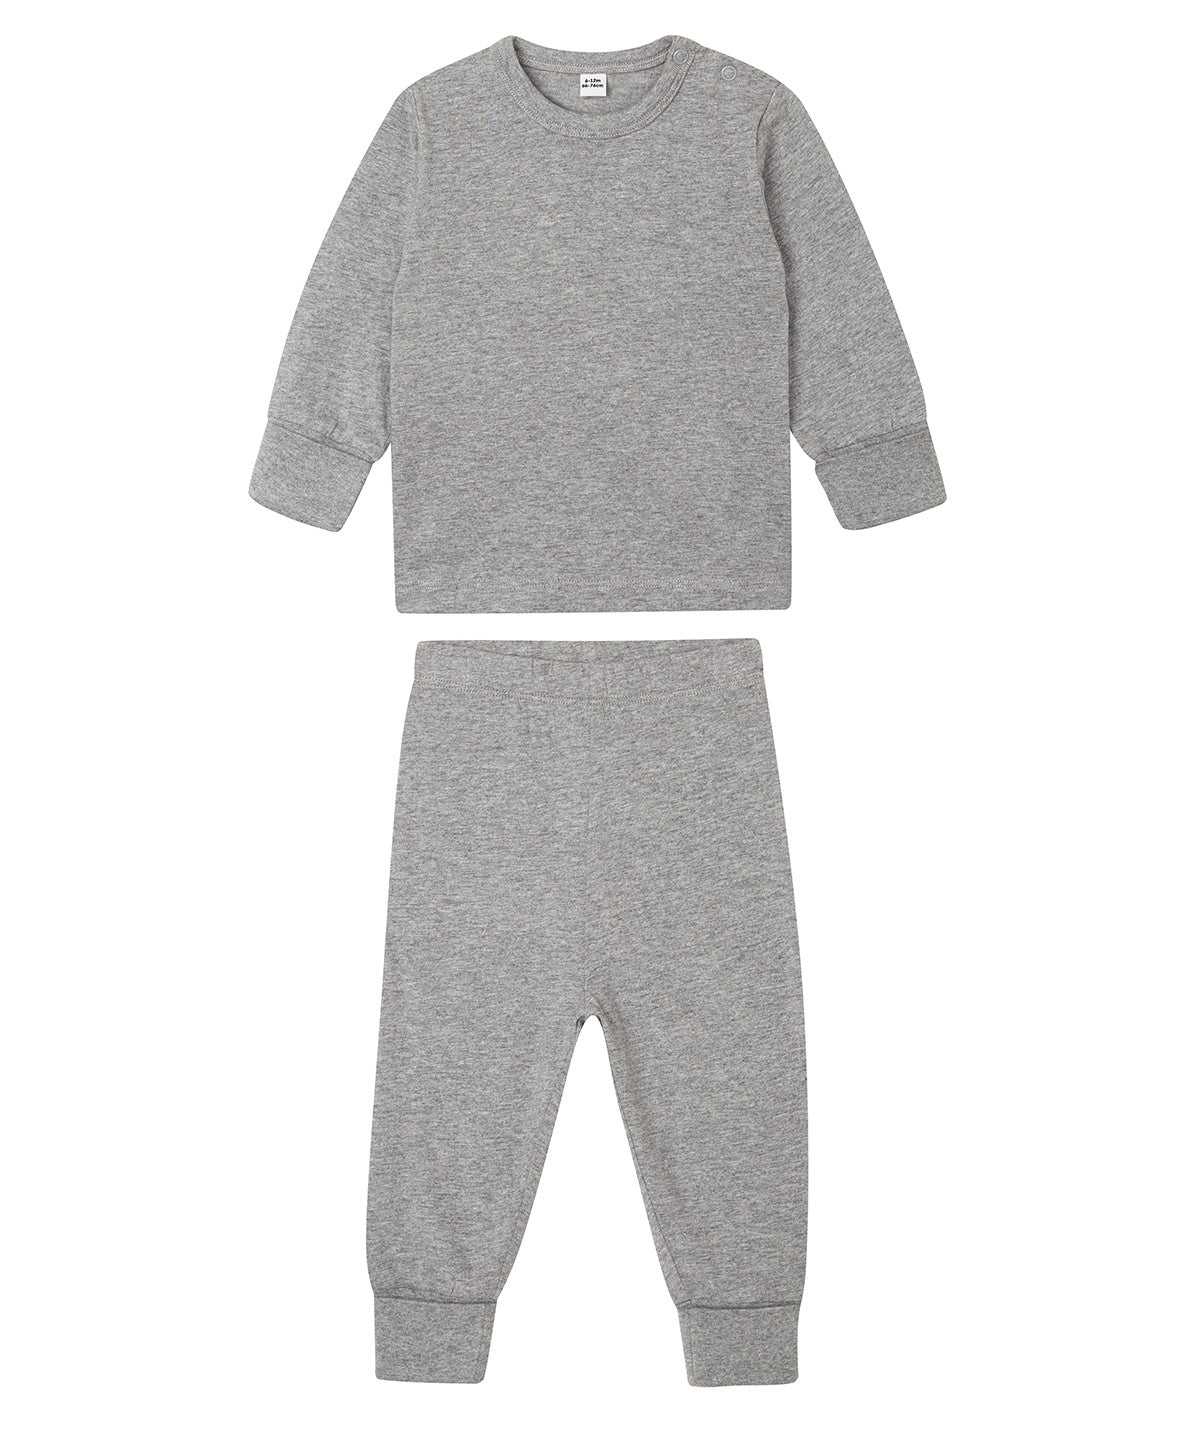 Náttföt - Baby Pyjamas